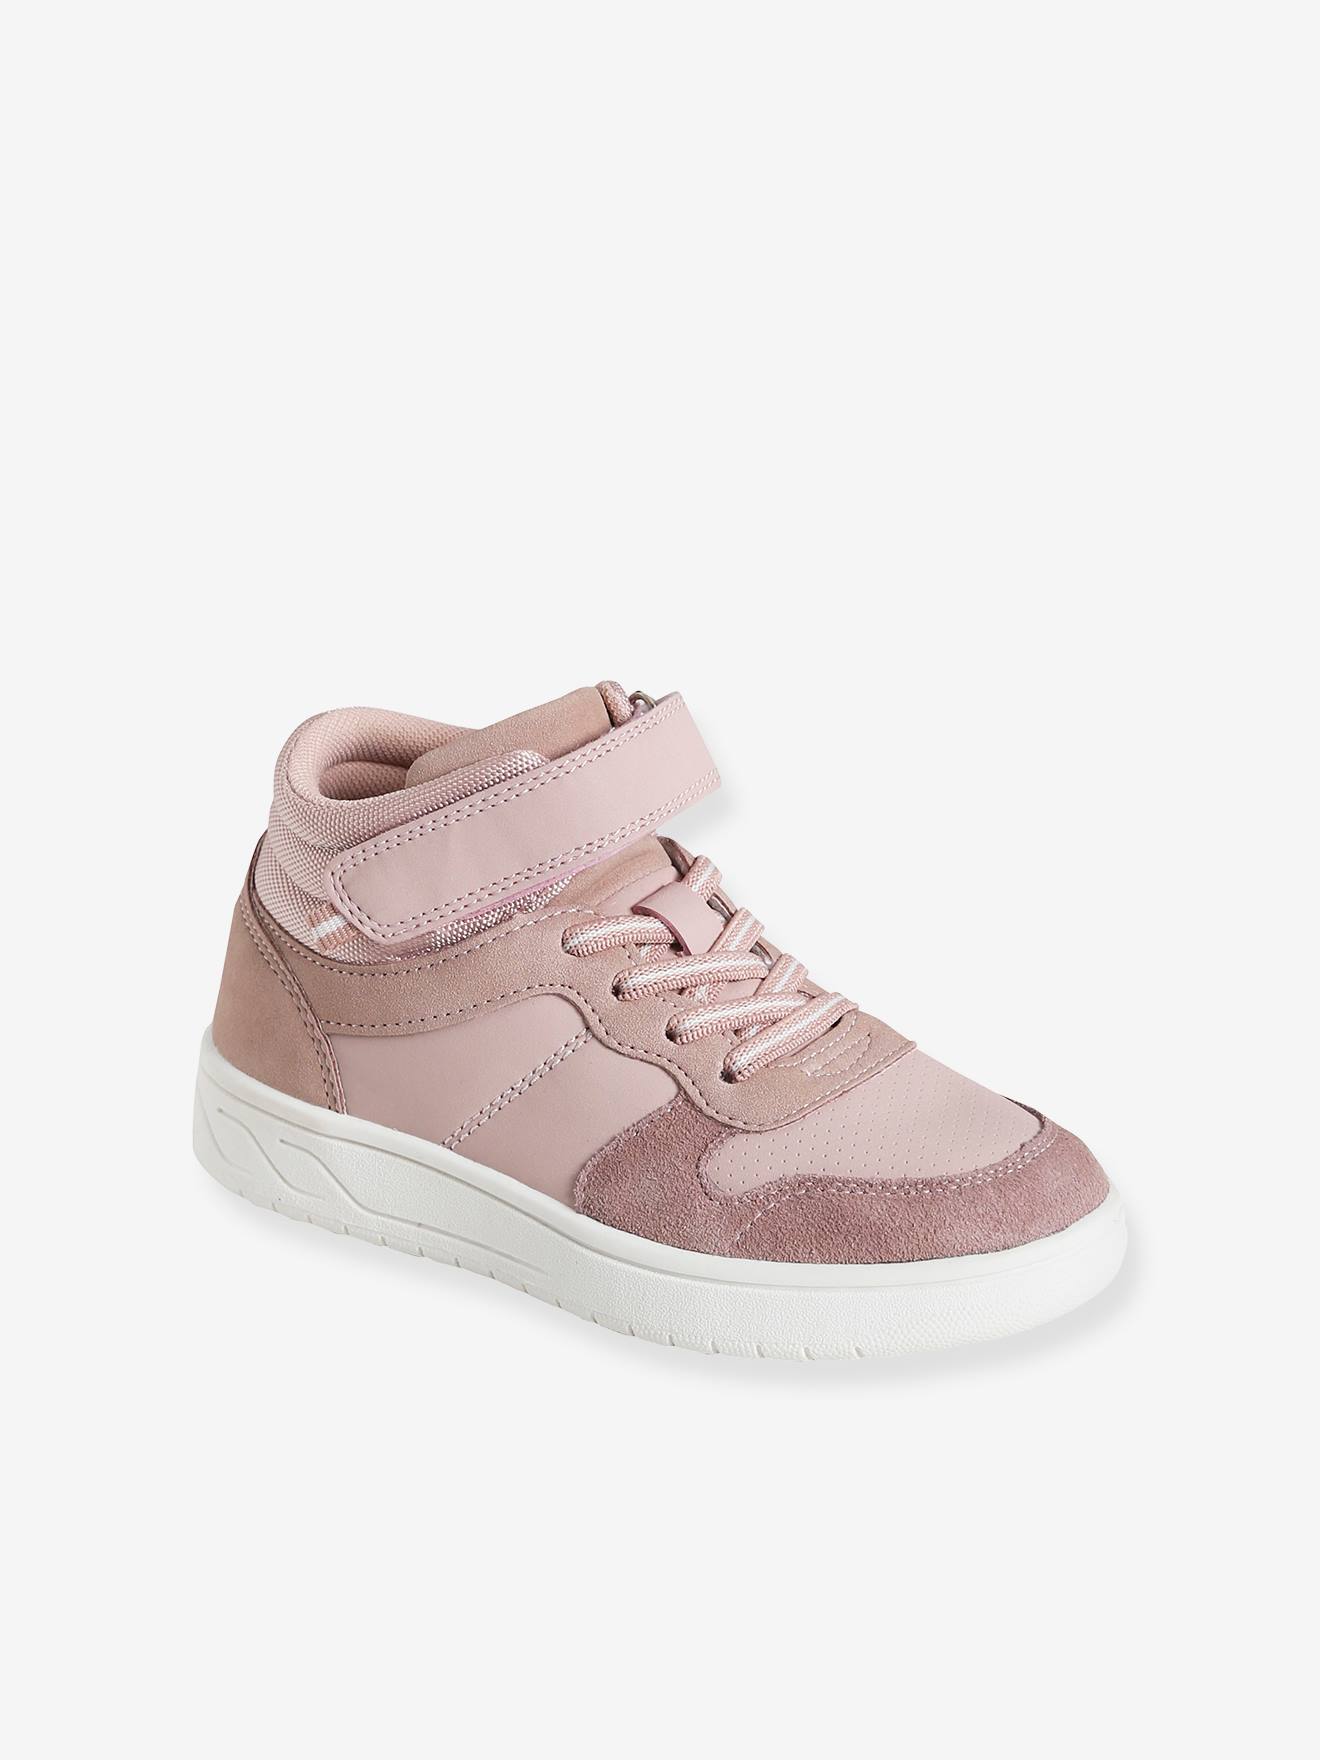 Halfhoge sneakers met veters en klittenband voor meisjes roze